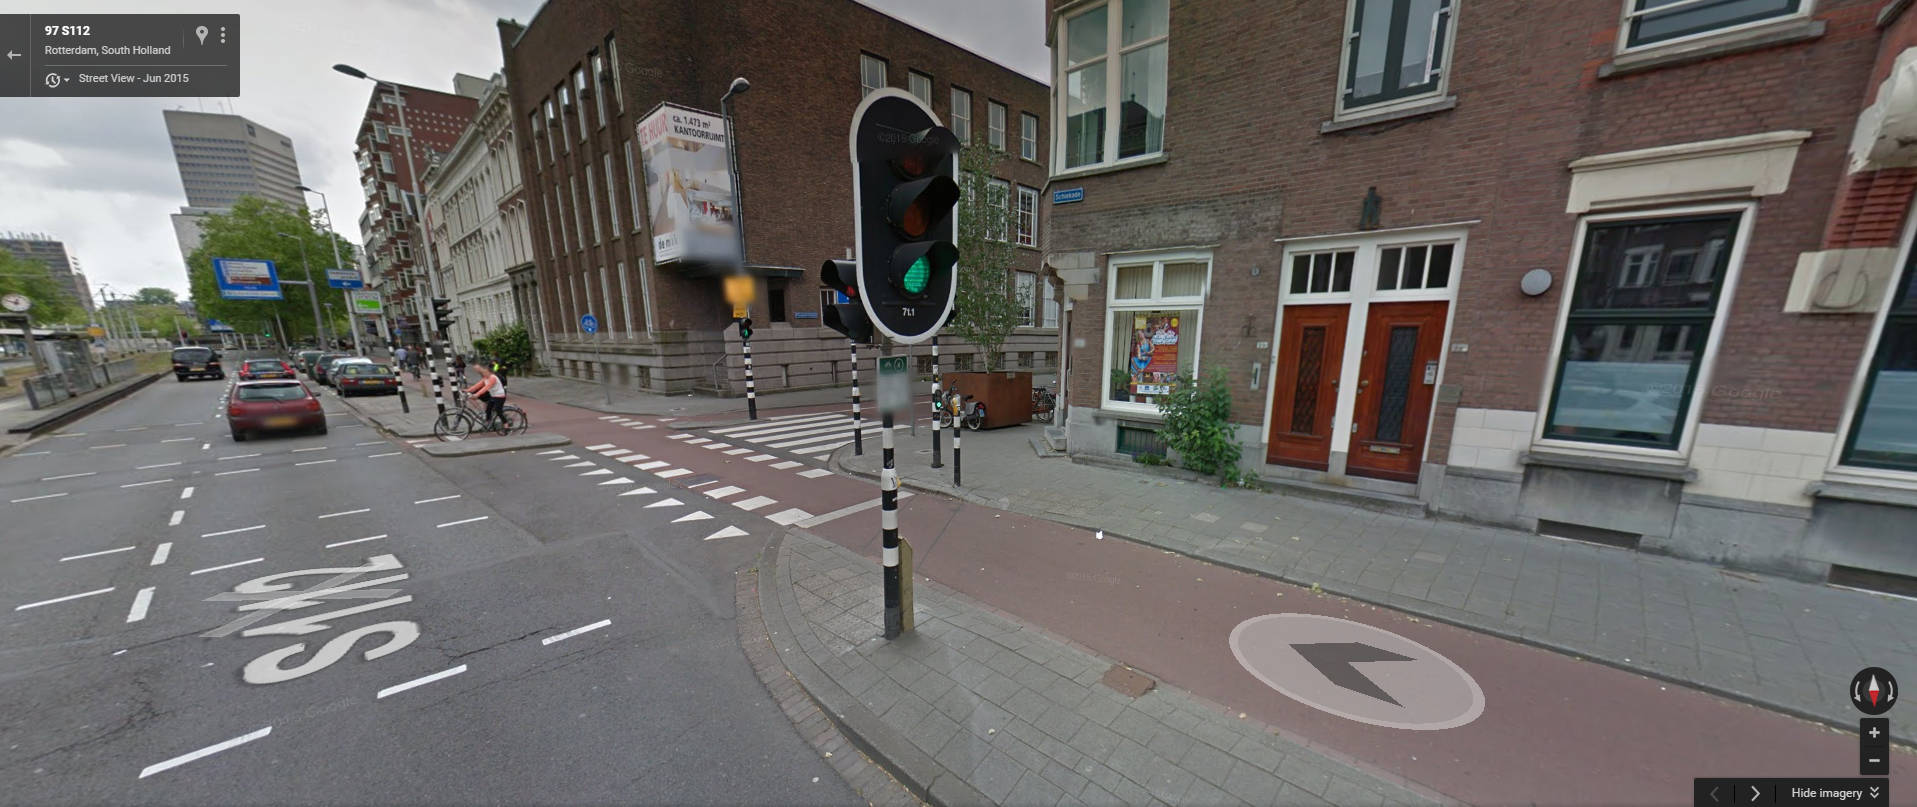 Schiekade - Rotterdam